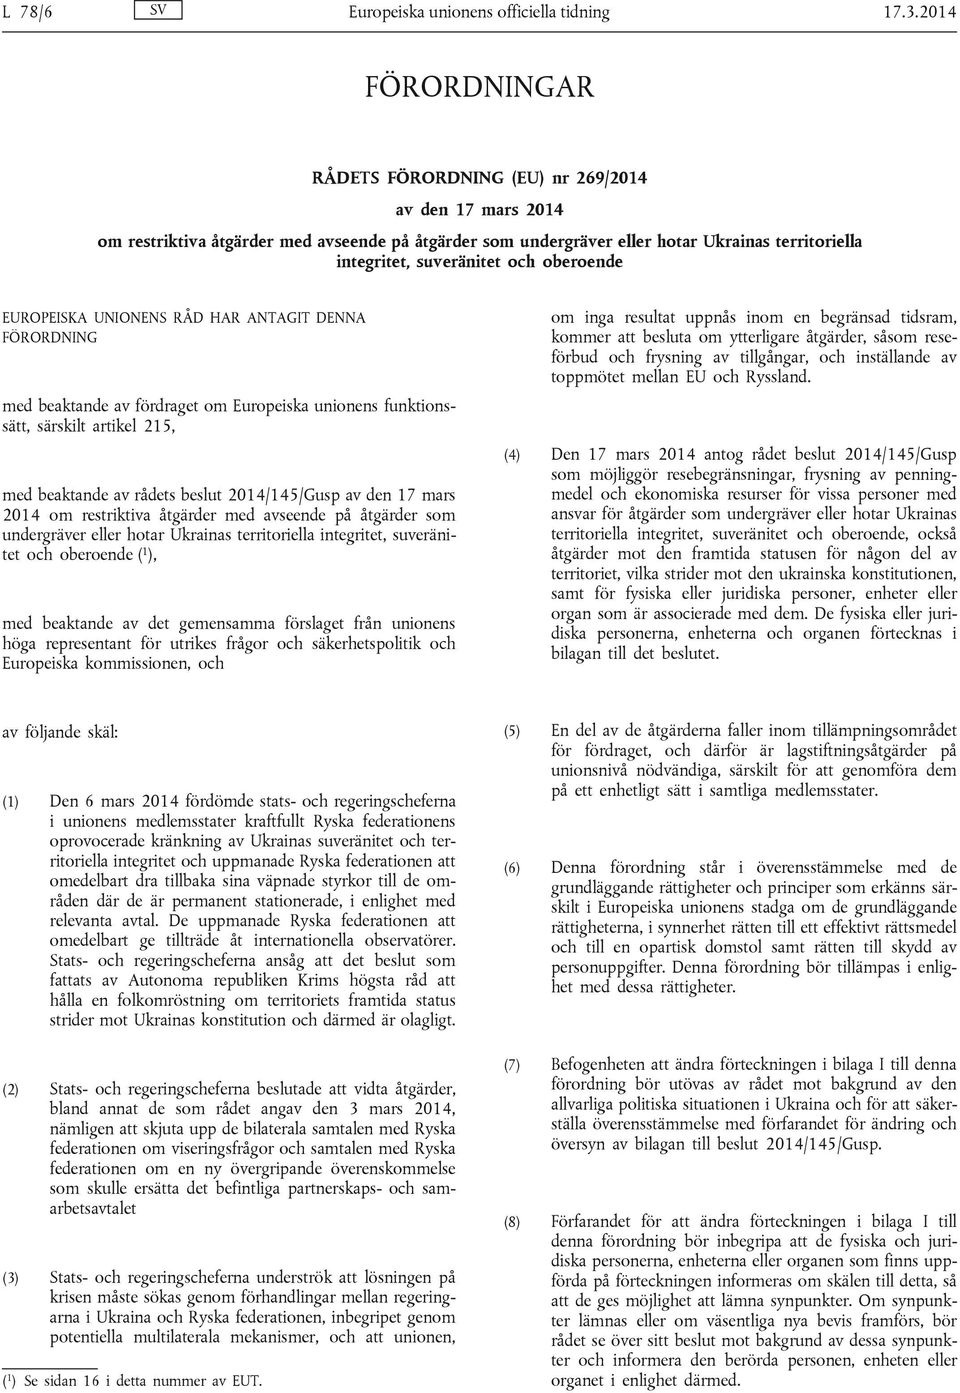 beaktande av rådets beslut 2014/145/Gusp av den 17 mars 2014 om restriktiva åtgärder med avseende på åtgärder som undergräver eller hotar Ukrainas territoriella integritet, suveränitet och oberoende